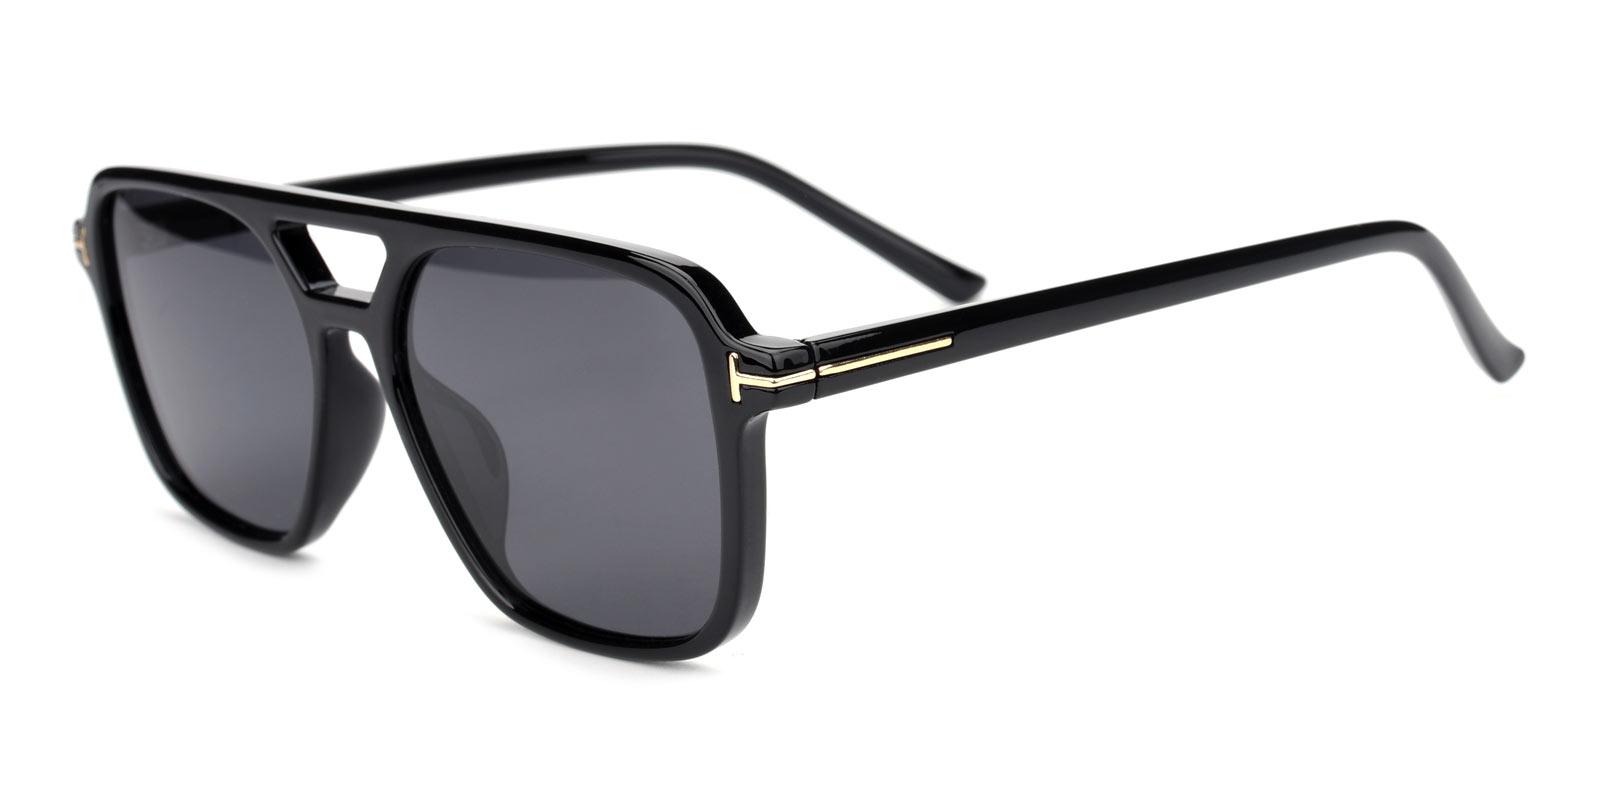 Galaxy Non Prescription Sunglasses-Black-Aviator-TR-Sunglasses-detail